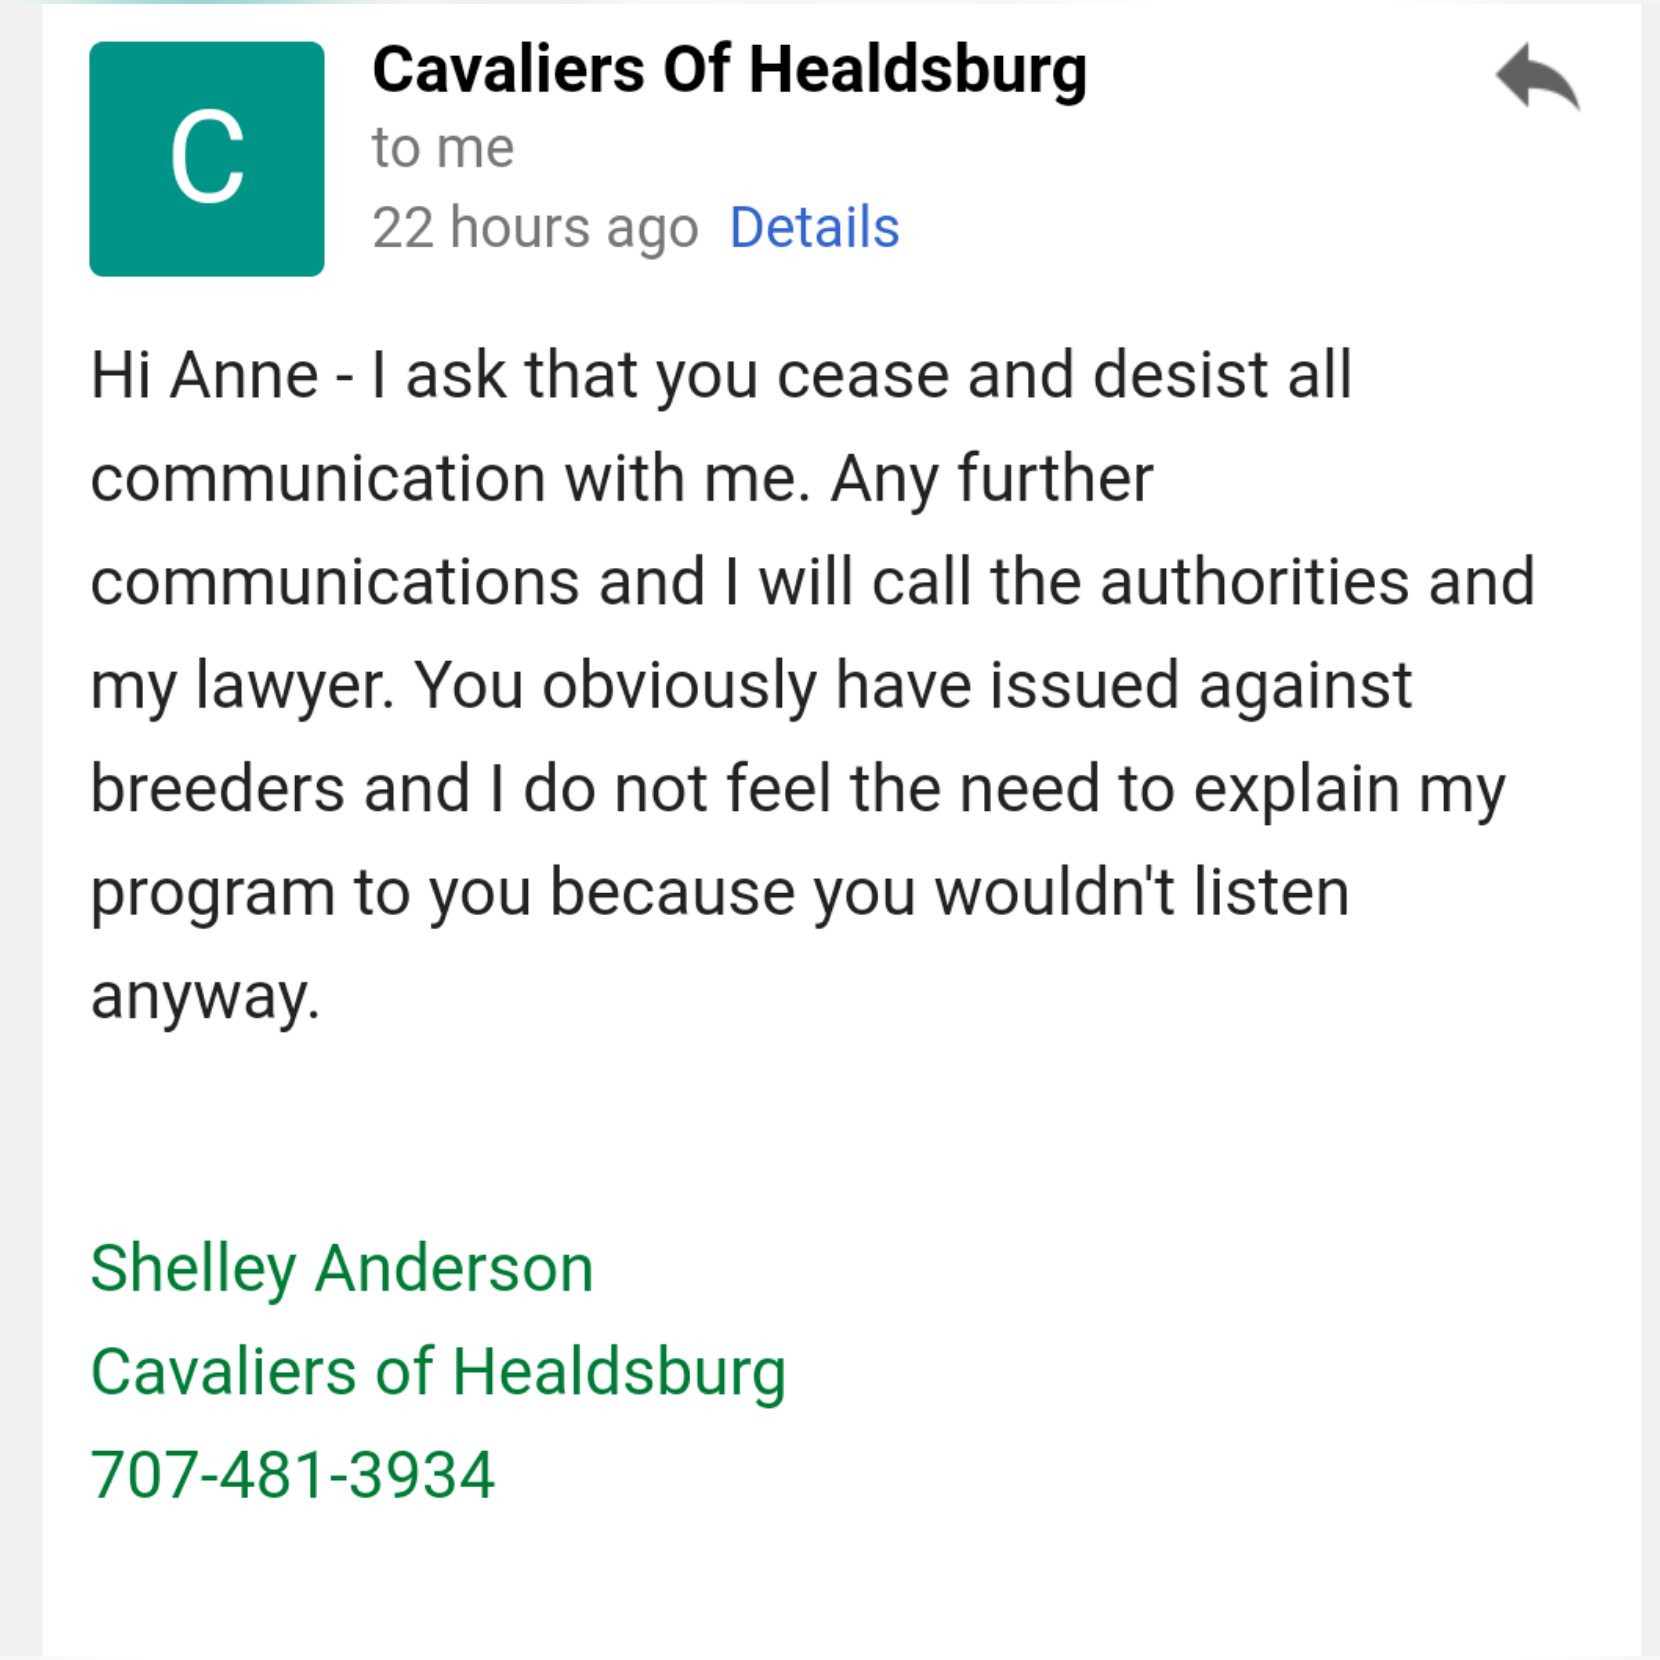 Cavaliers of Healdsburg email 4